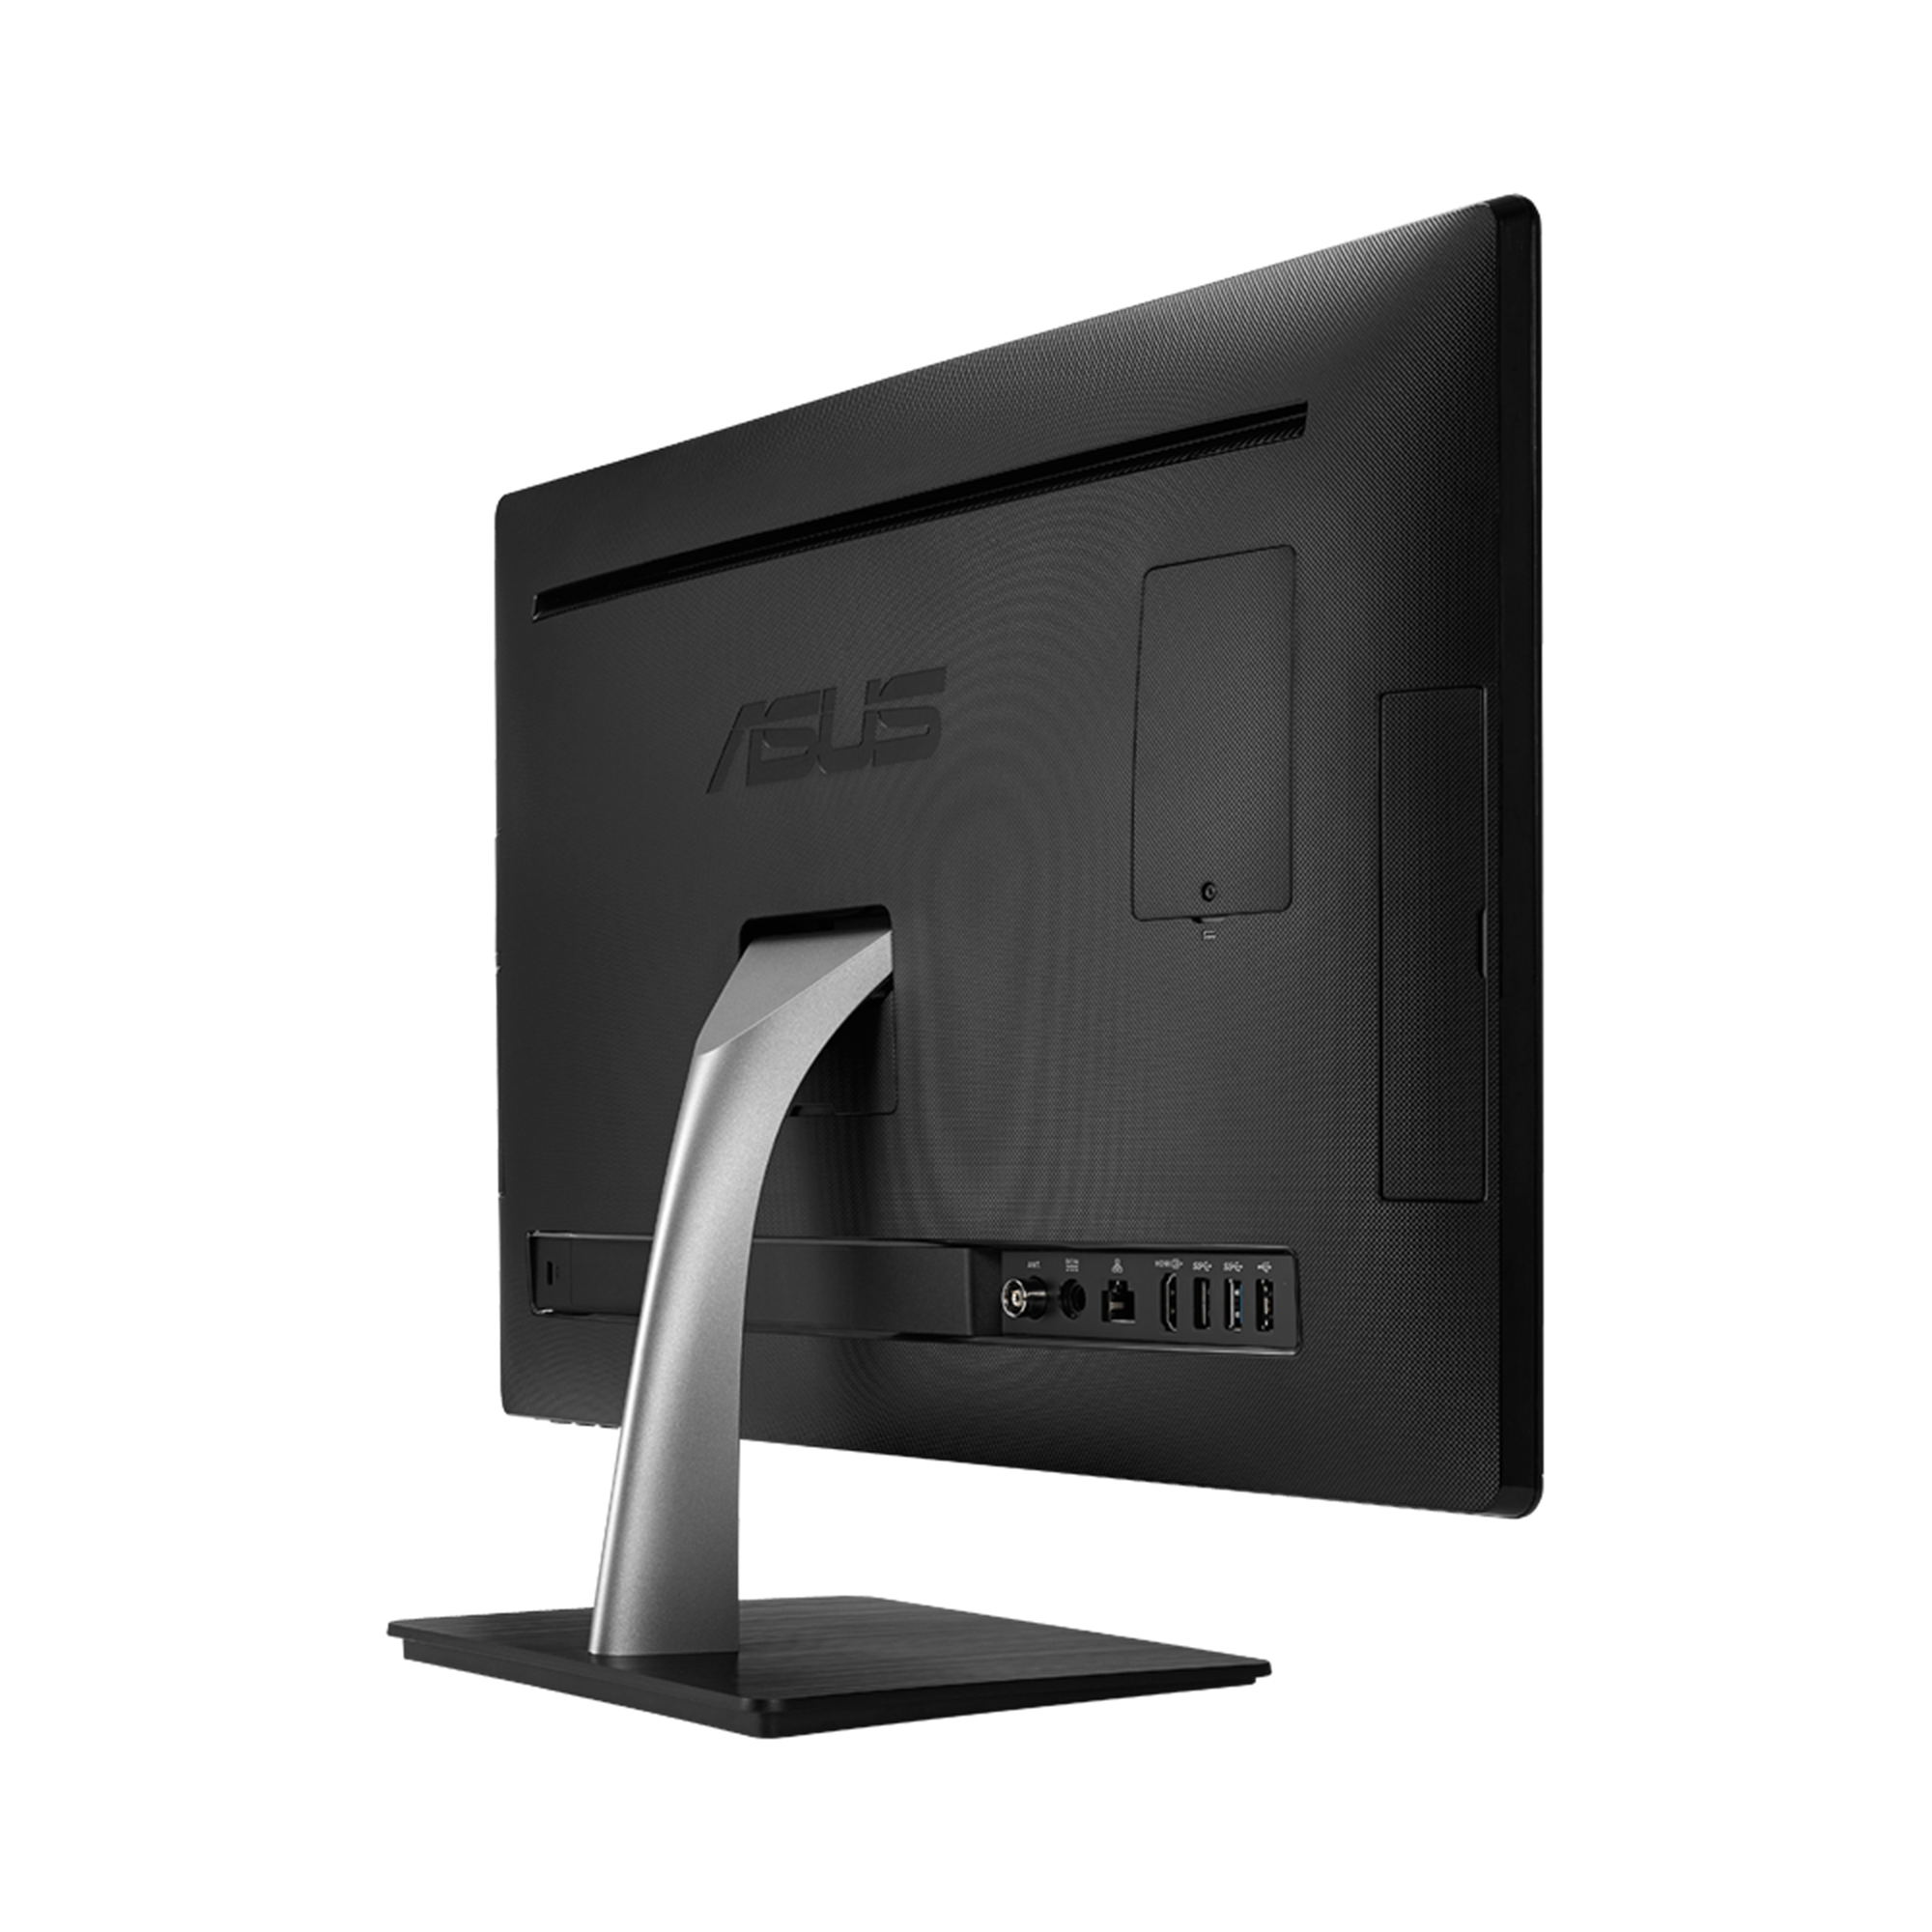 値段交渉対応 ASUS all-in-one PC V220IA core i3